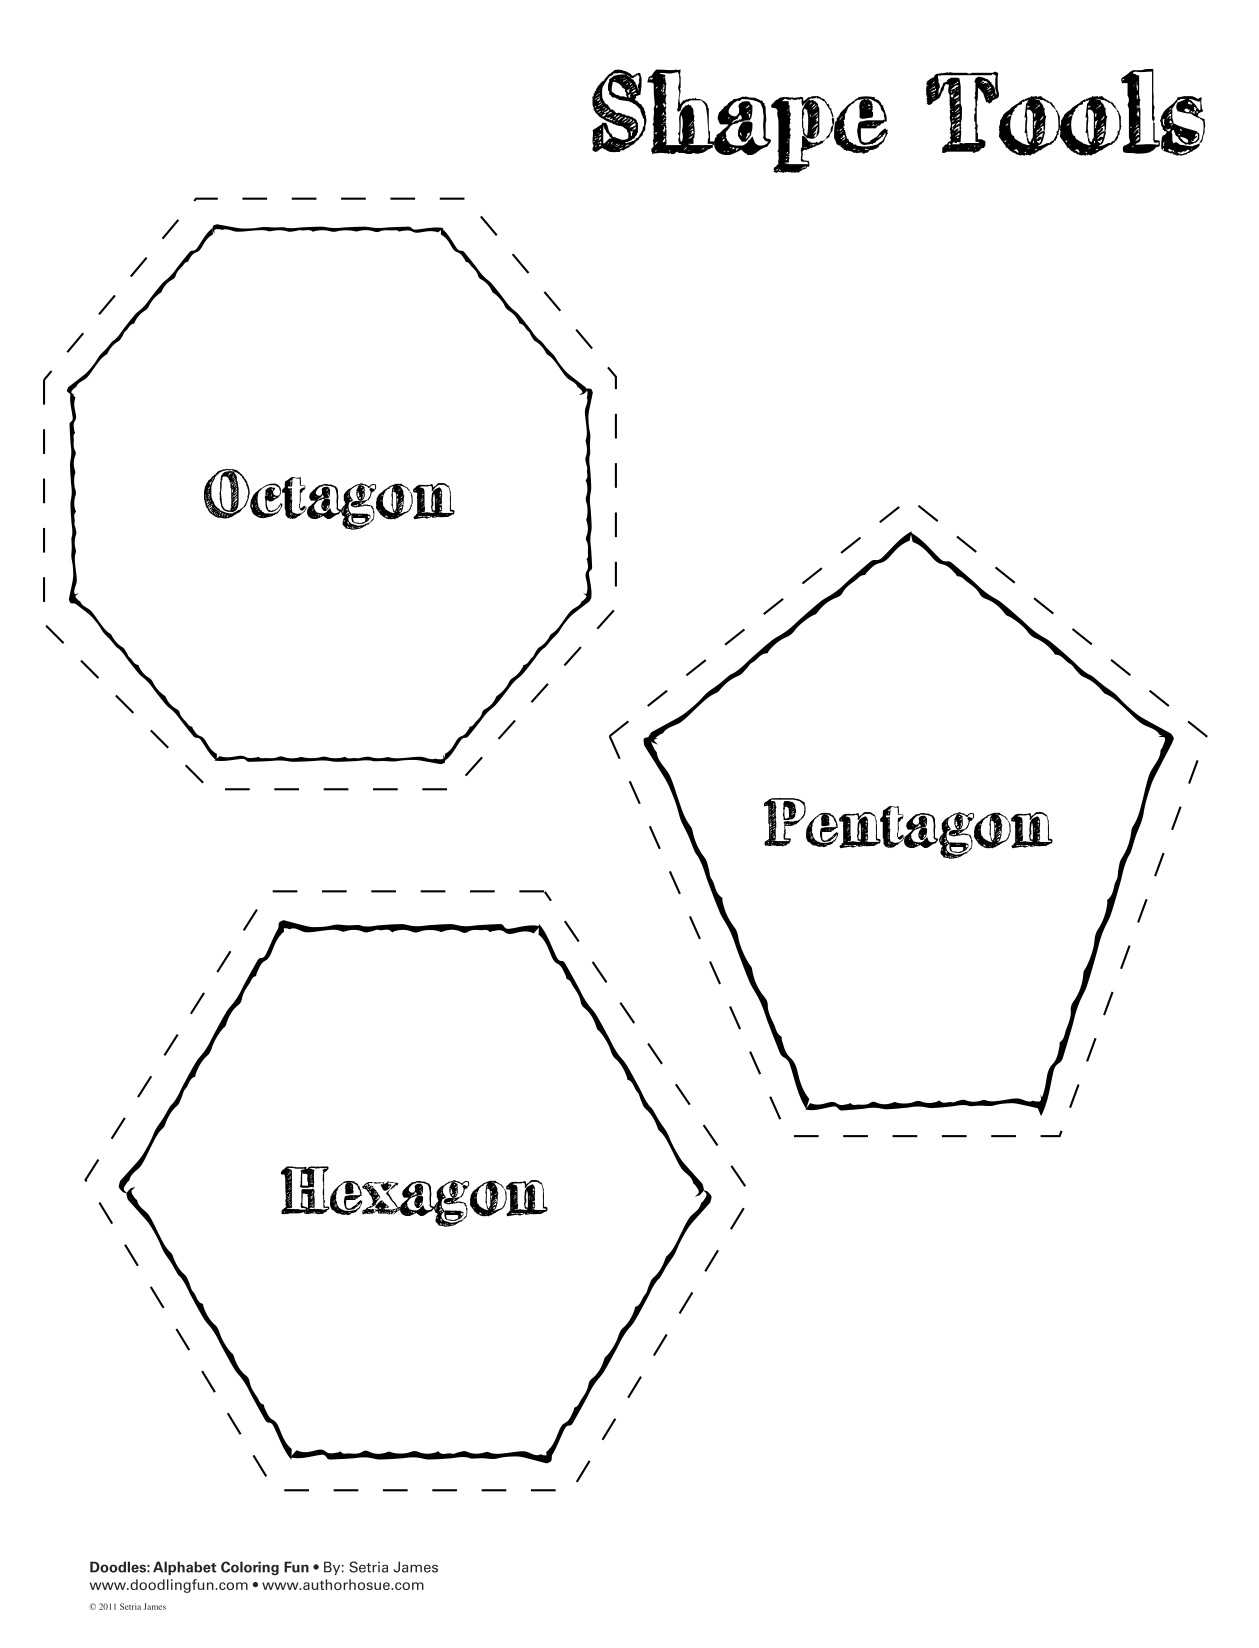 Basic Geometric Shapes Worksheets Image